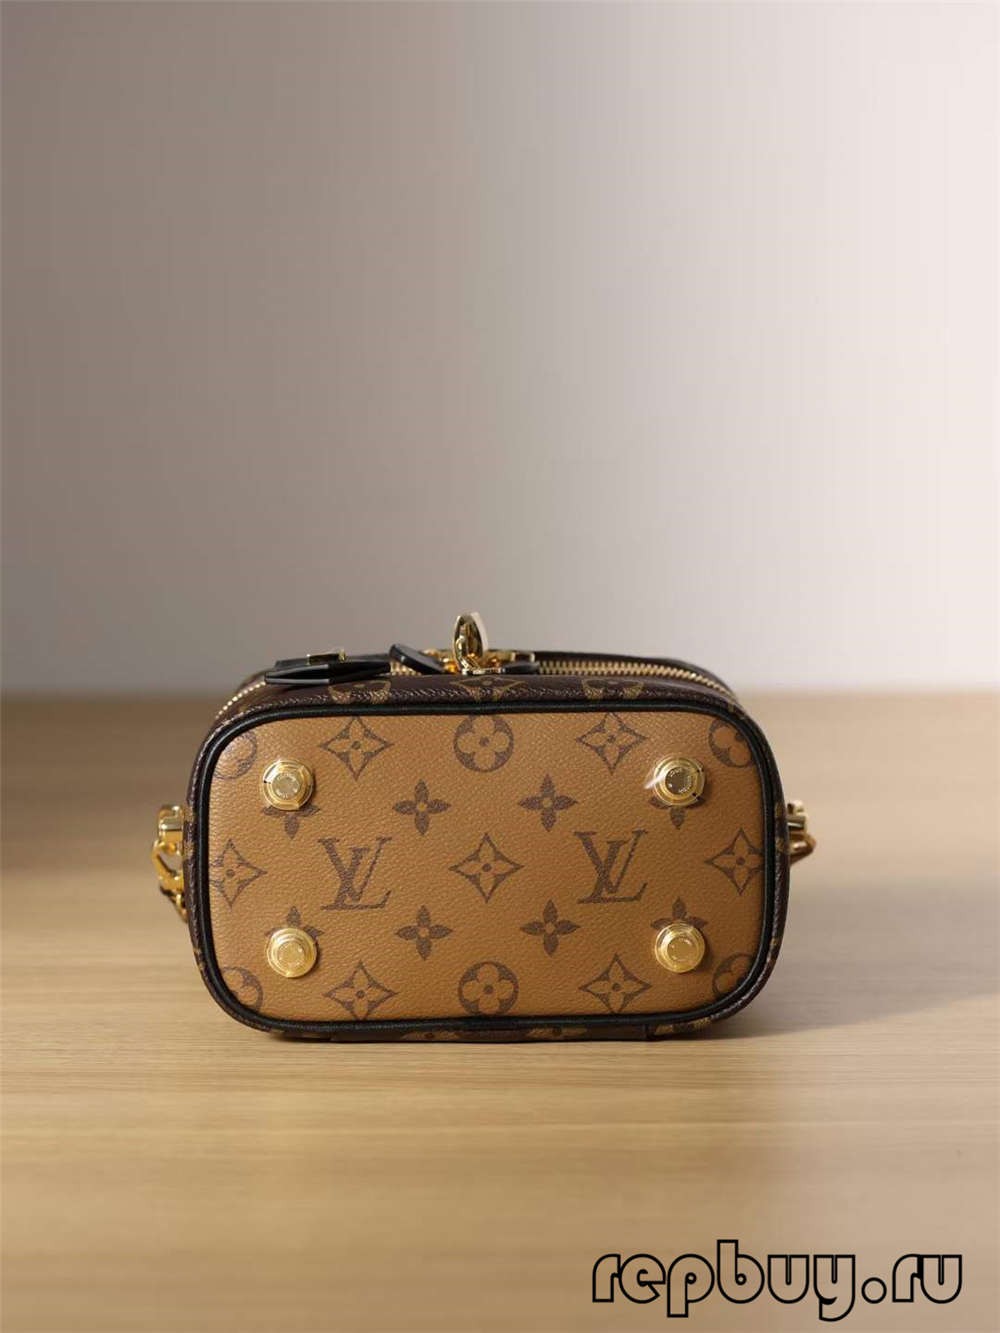 Louis Vuitton M45165 VANITY Small Top Replica Handbag (2022 ایڈیشن)-بہترین معیار کا جعلی لوئس ووٹن بیگ آن لائن اسٹور، ریپلیکا ڈیزائنر بیگ آر یو